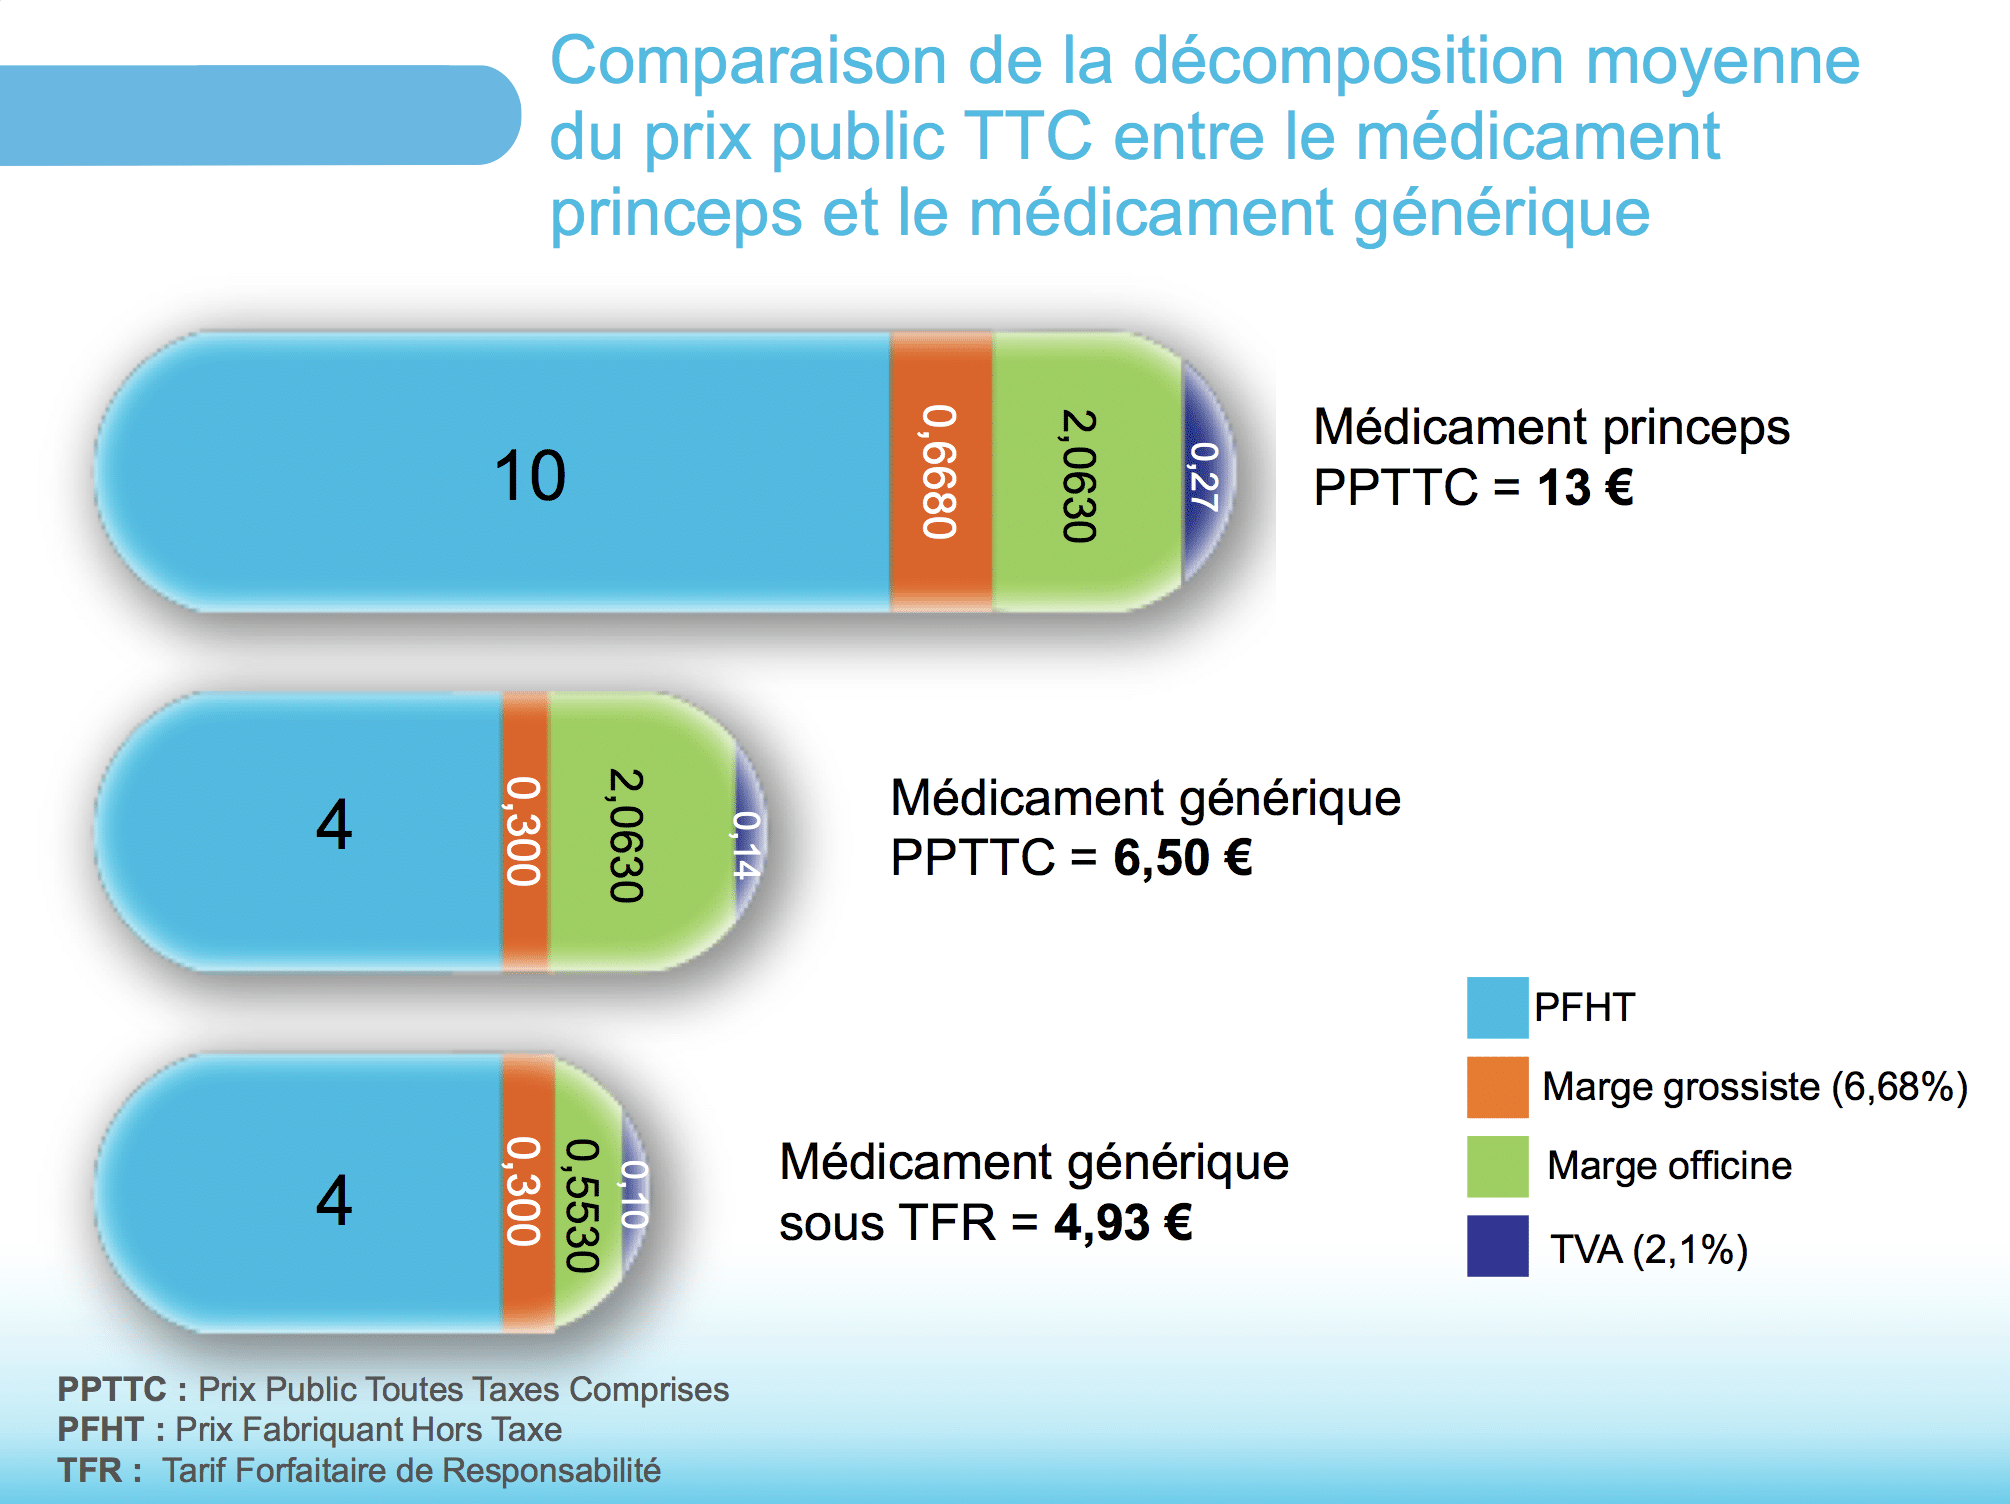 Comparaison de la décomposition moyenne du prix public TTC
entre le médicament princeps et le médicament générique